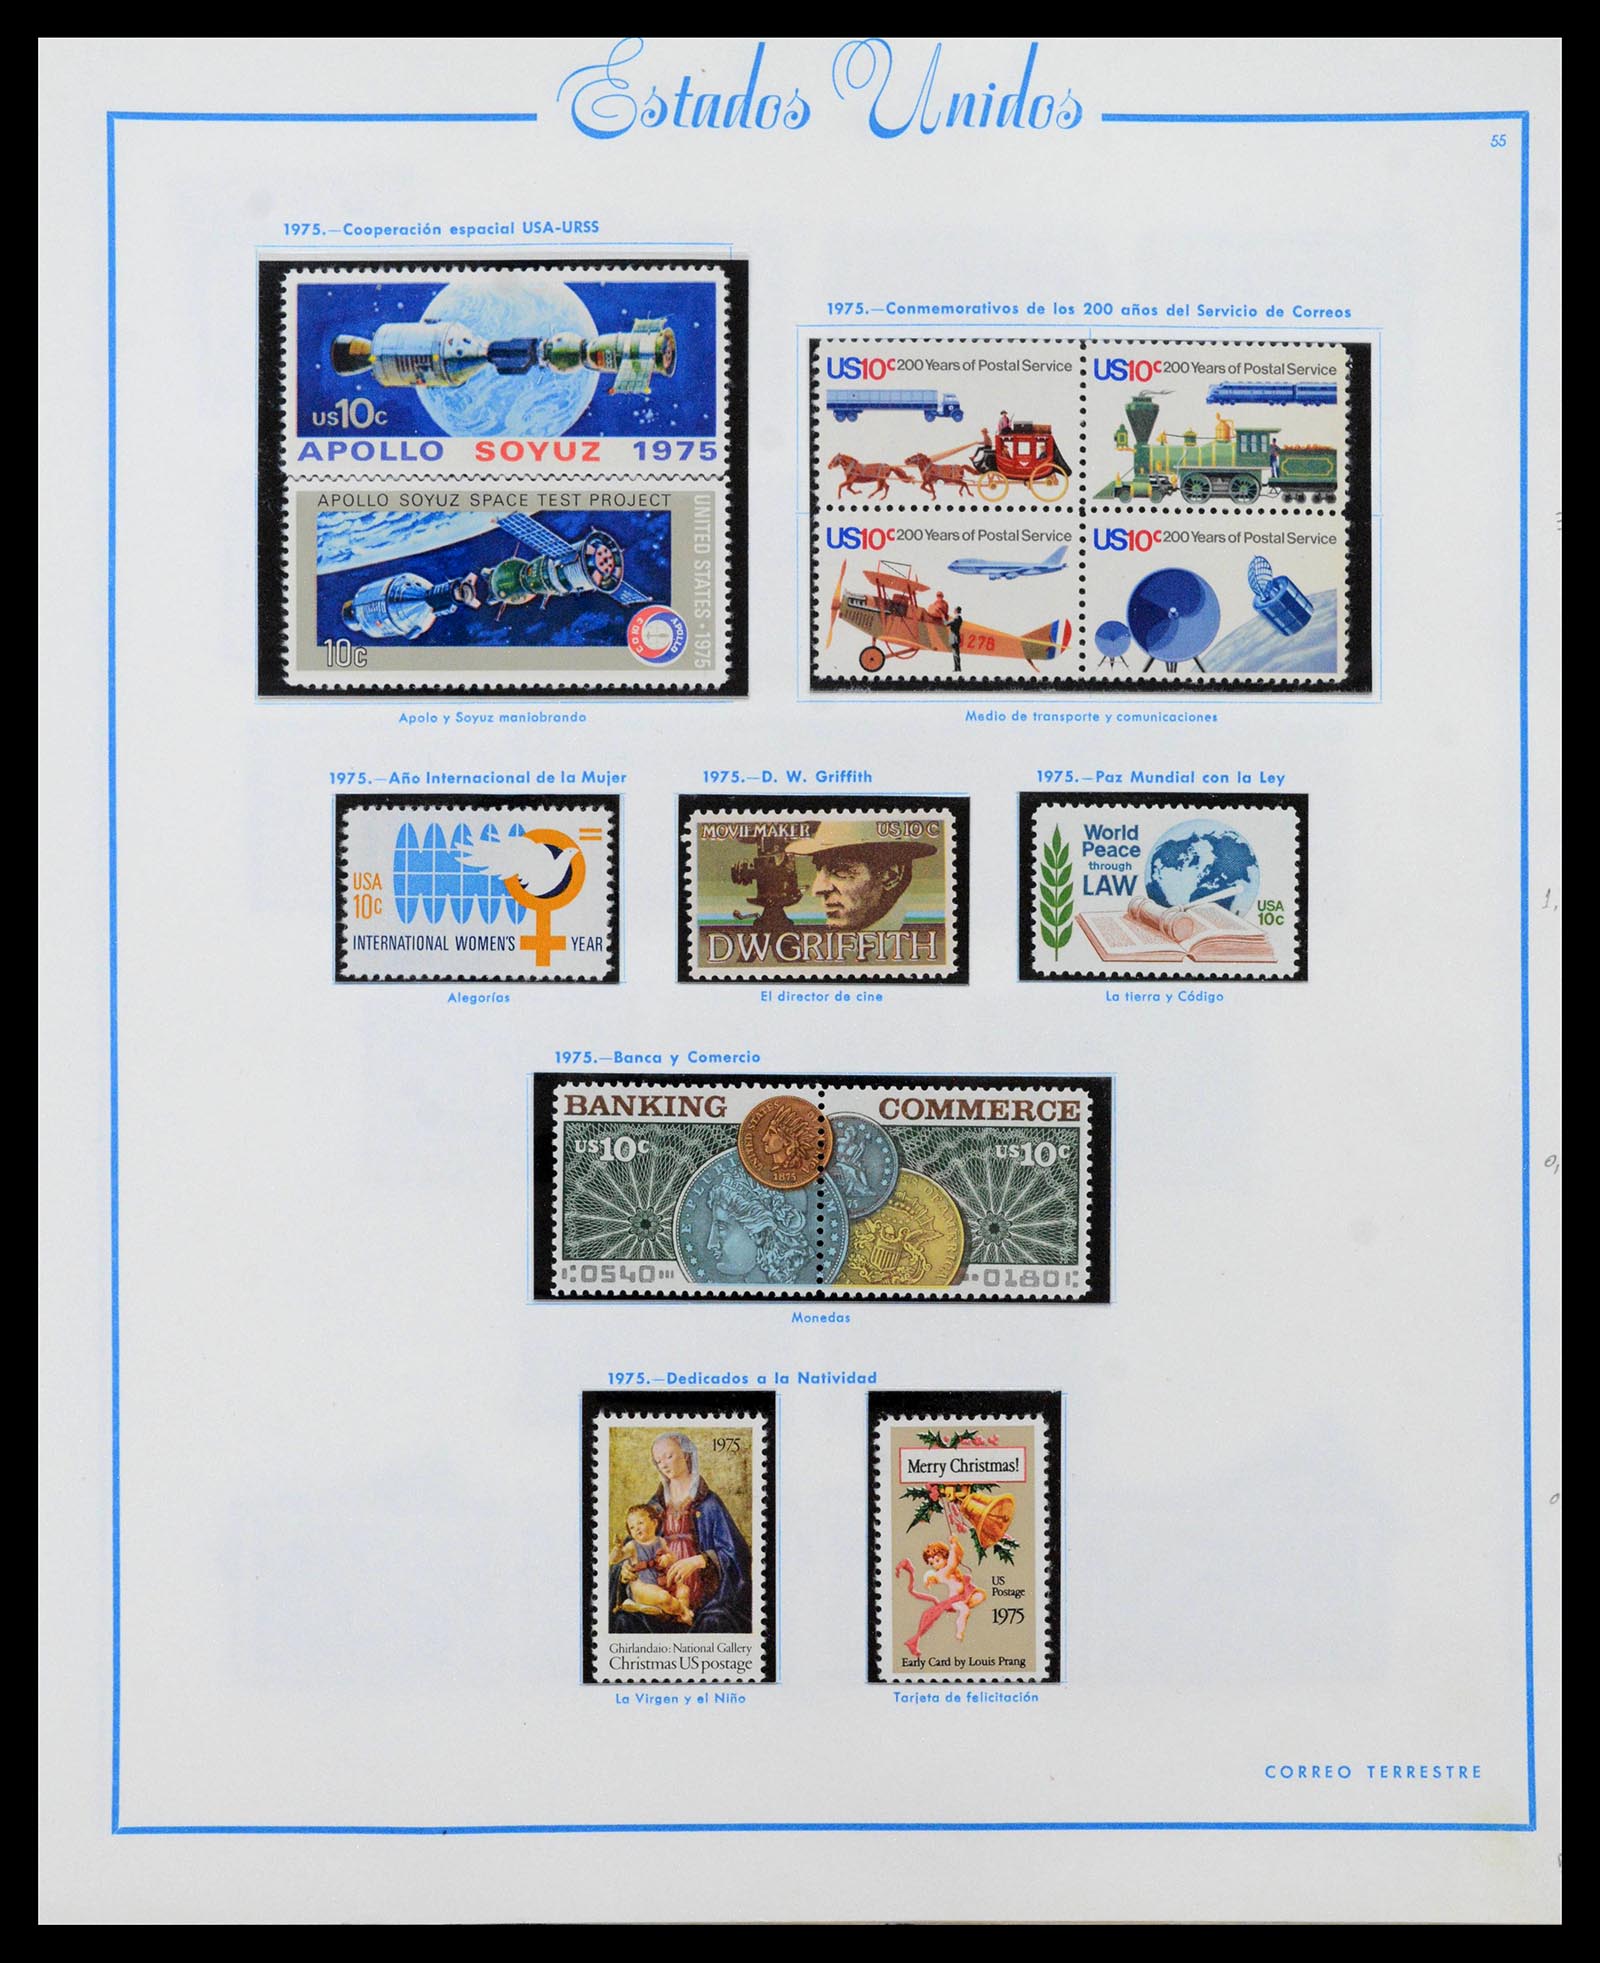 39190 0060 - Stamp collection 39190 USA 1851-1975.